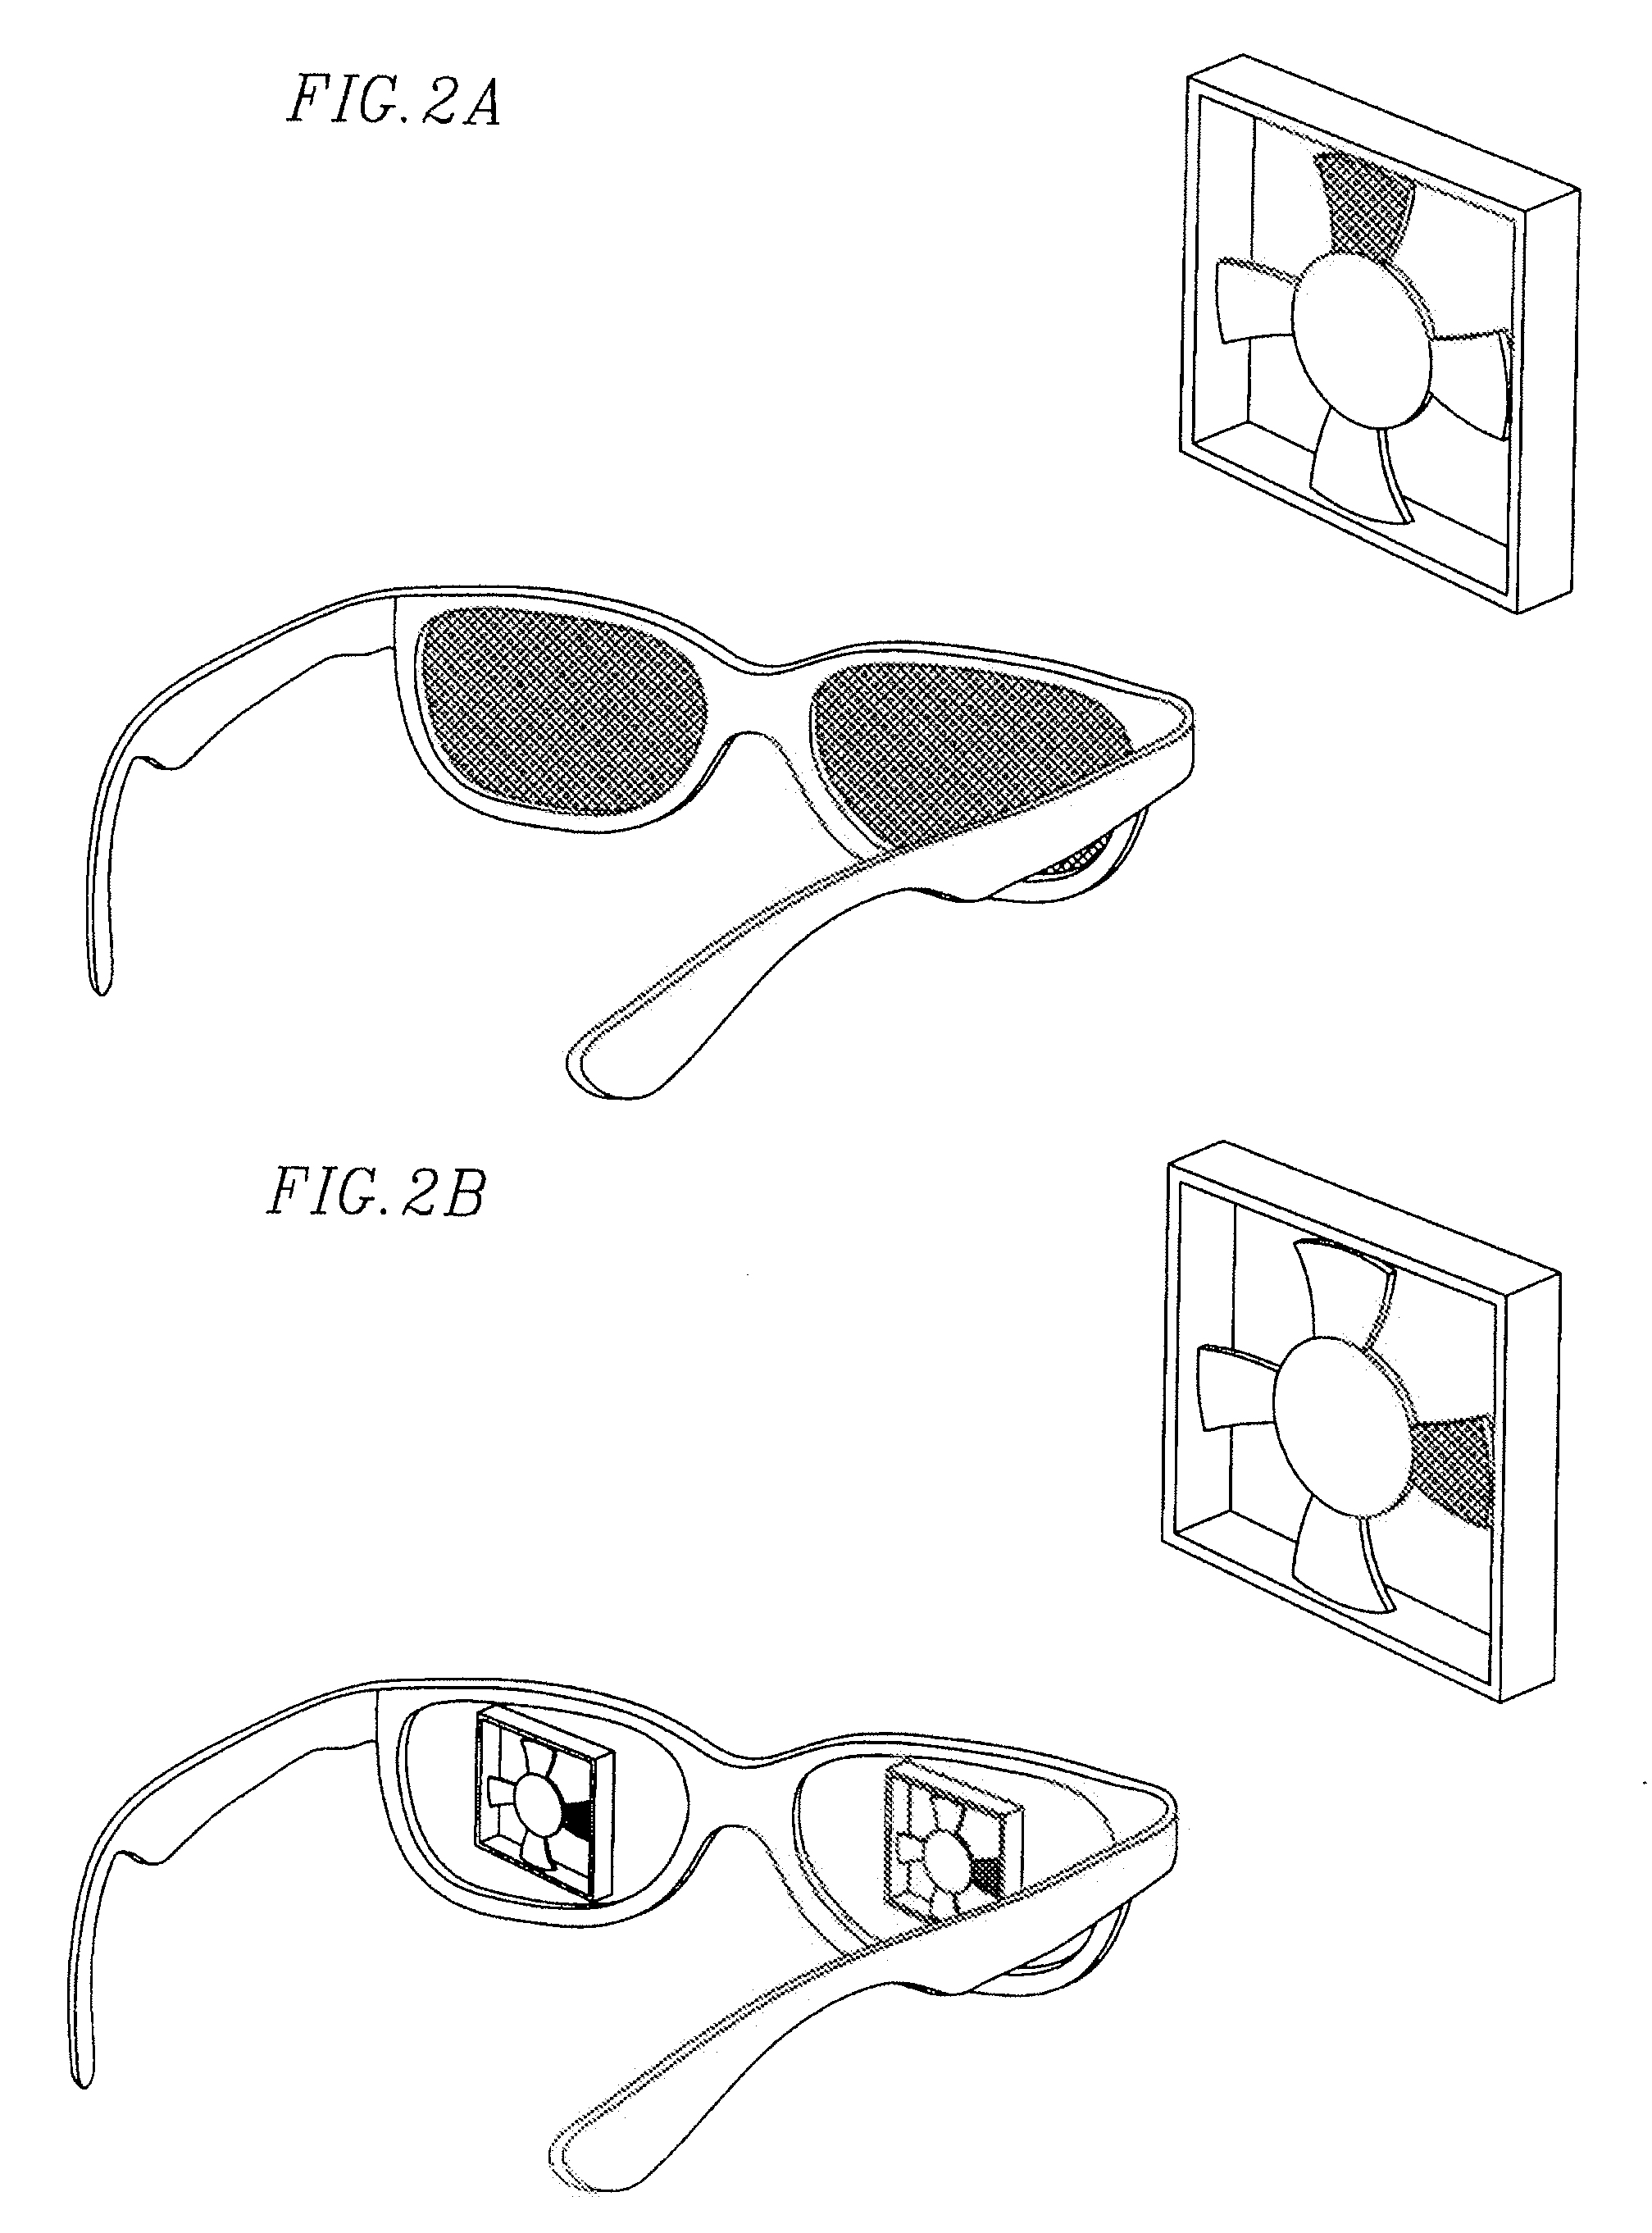 Shutter-based stroboscope